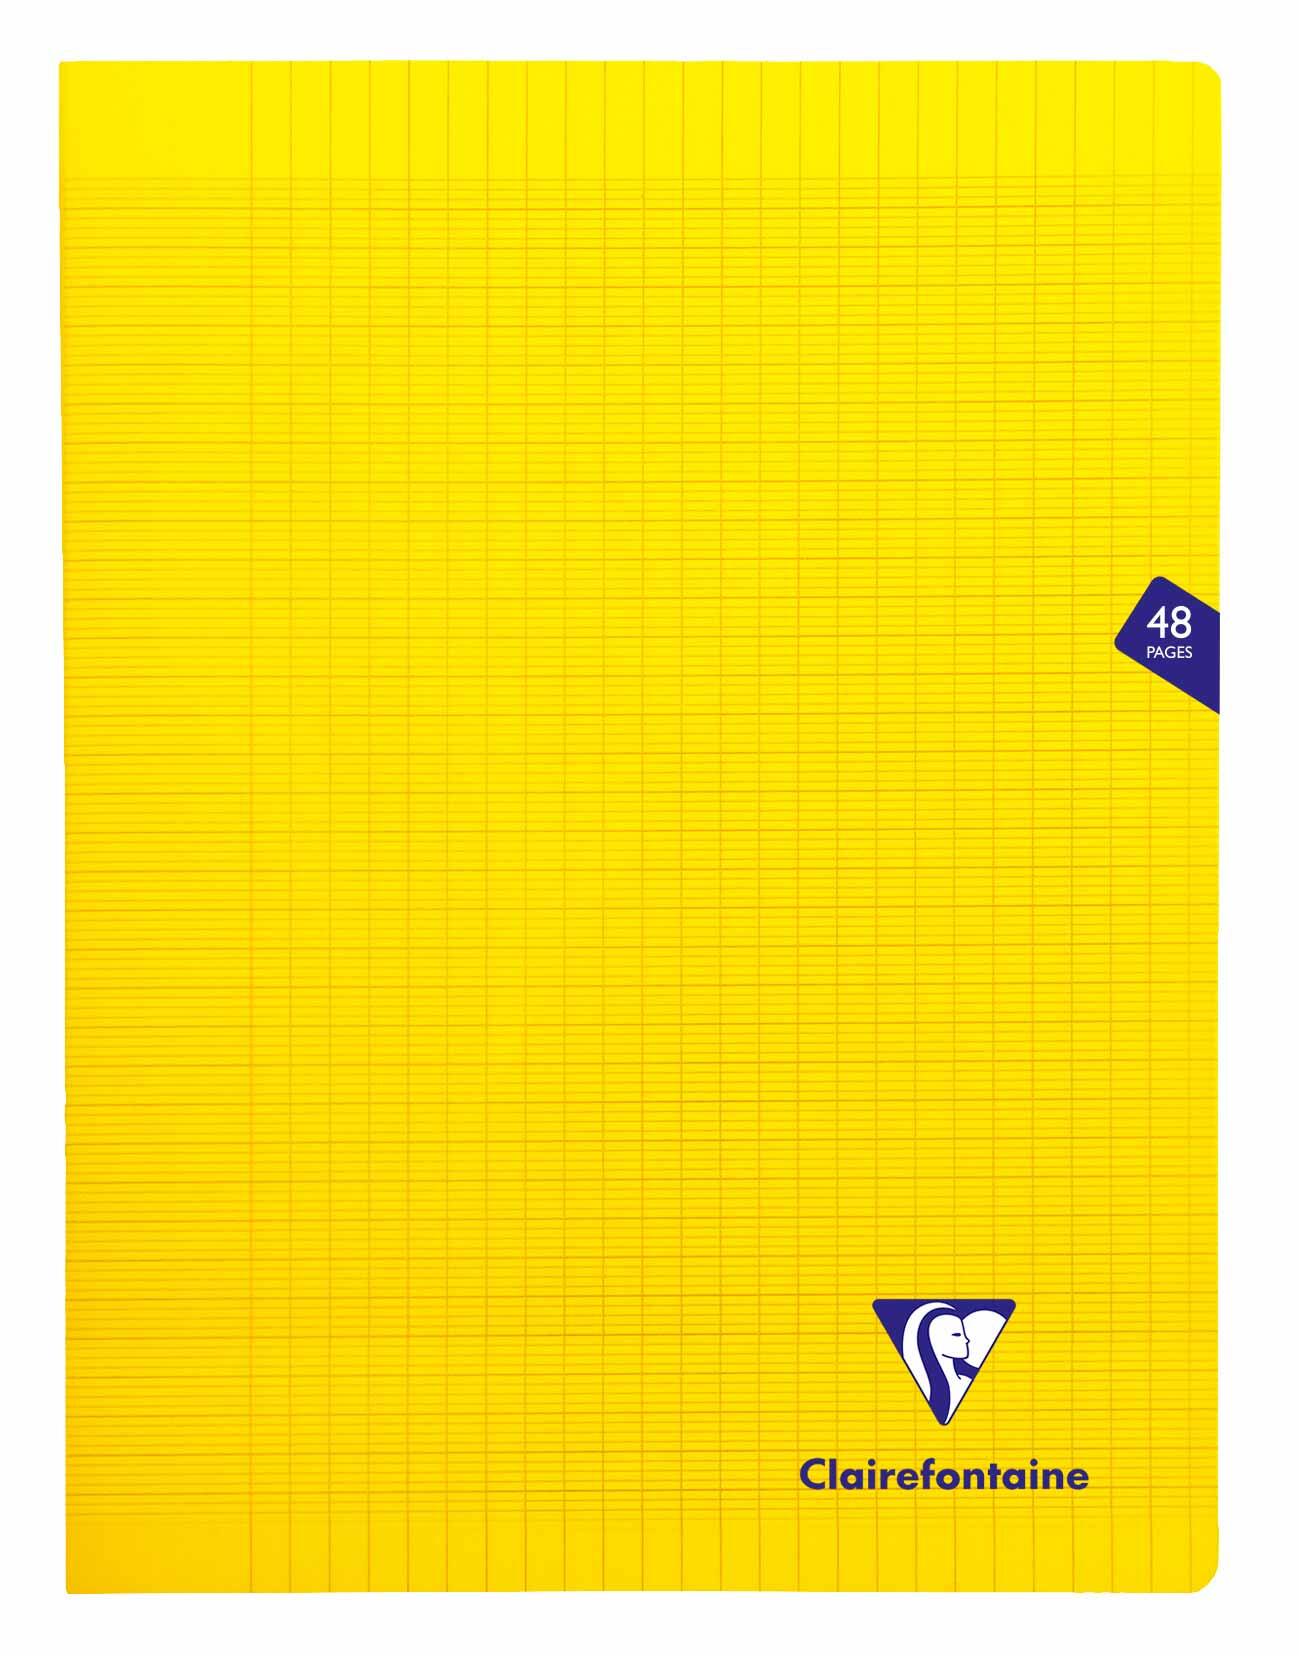 Piqure 24x32 - 90 g - 48 p - Séyès - couverture polypro jaune - MIMESYS